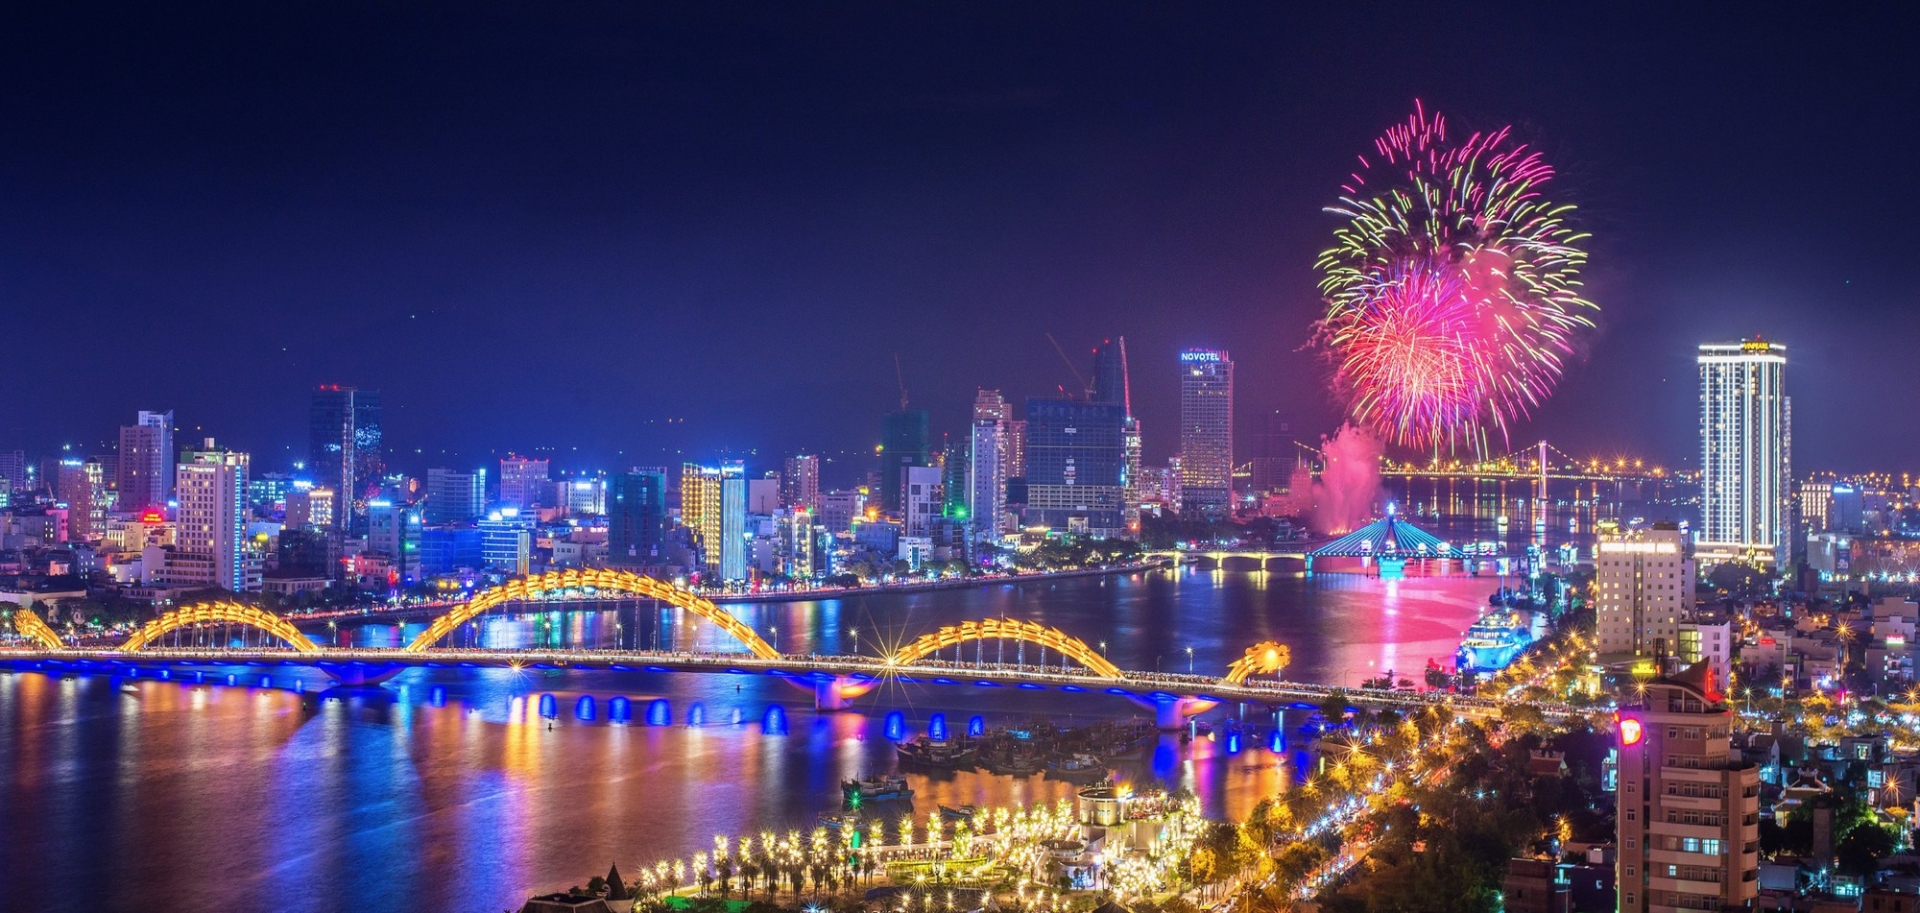 国际烟花节肯定了岘港的亚洲领先活动和节日城市品牌。